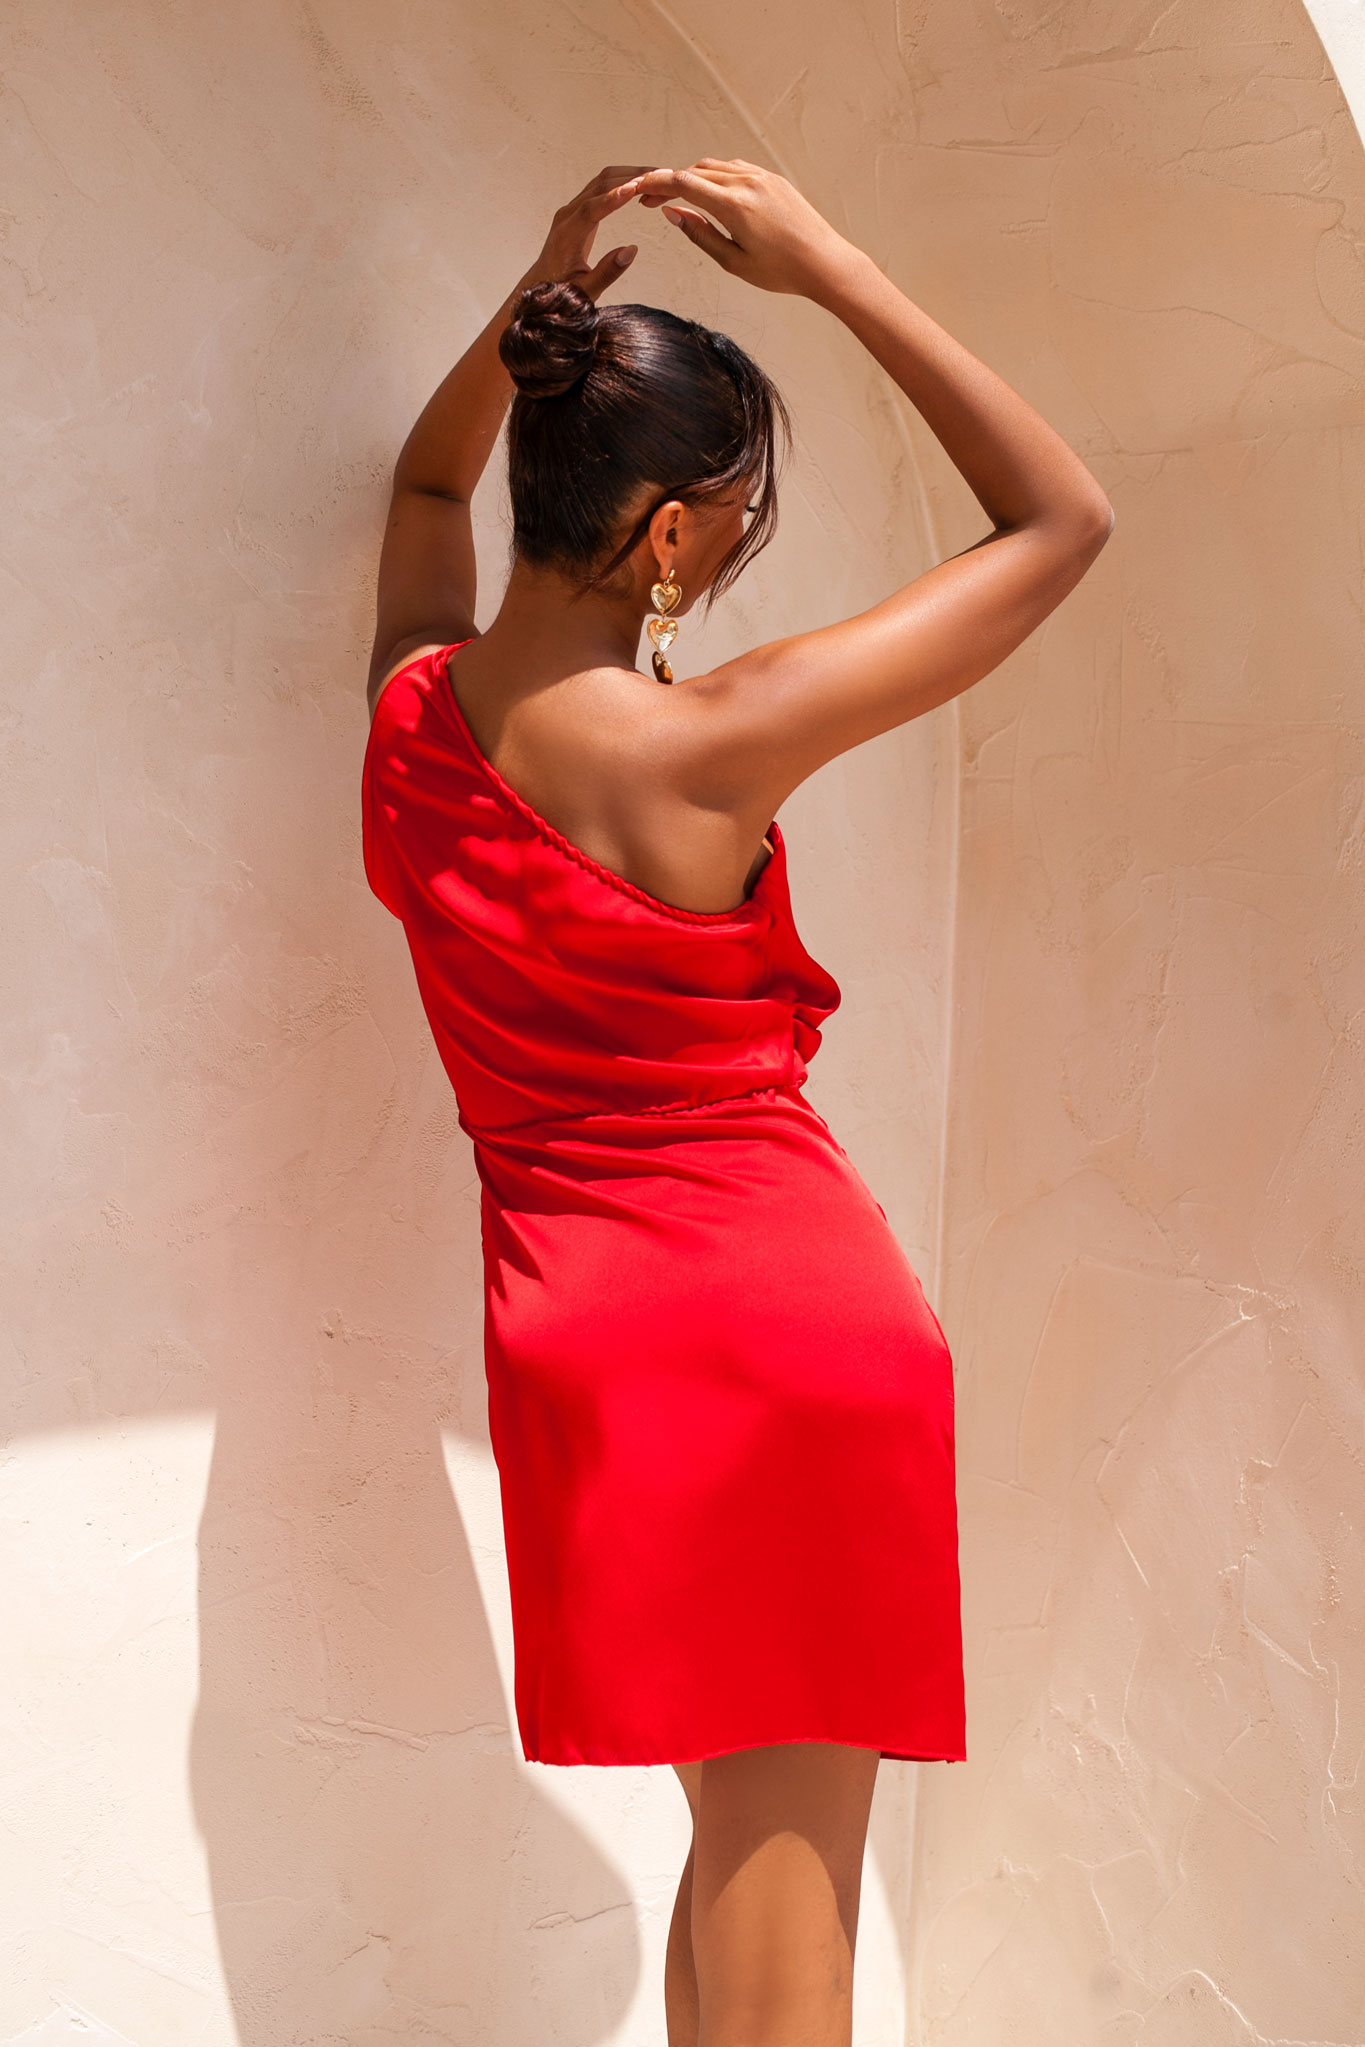 ΝΕΕΣ ΑΦΙΞΕΙΣ Hazelnut μίνι φόρεμα με έναν ώμο με όψη σατέν κόκκινο